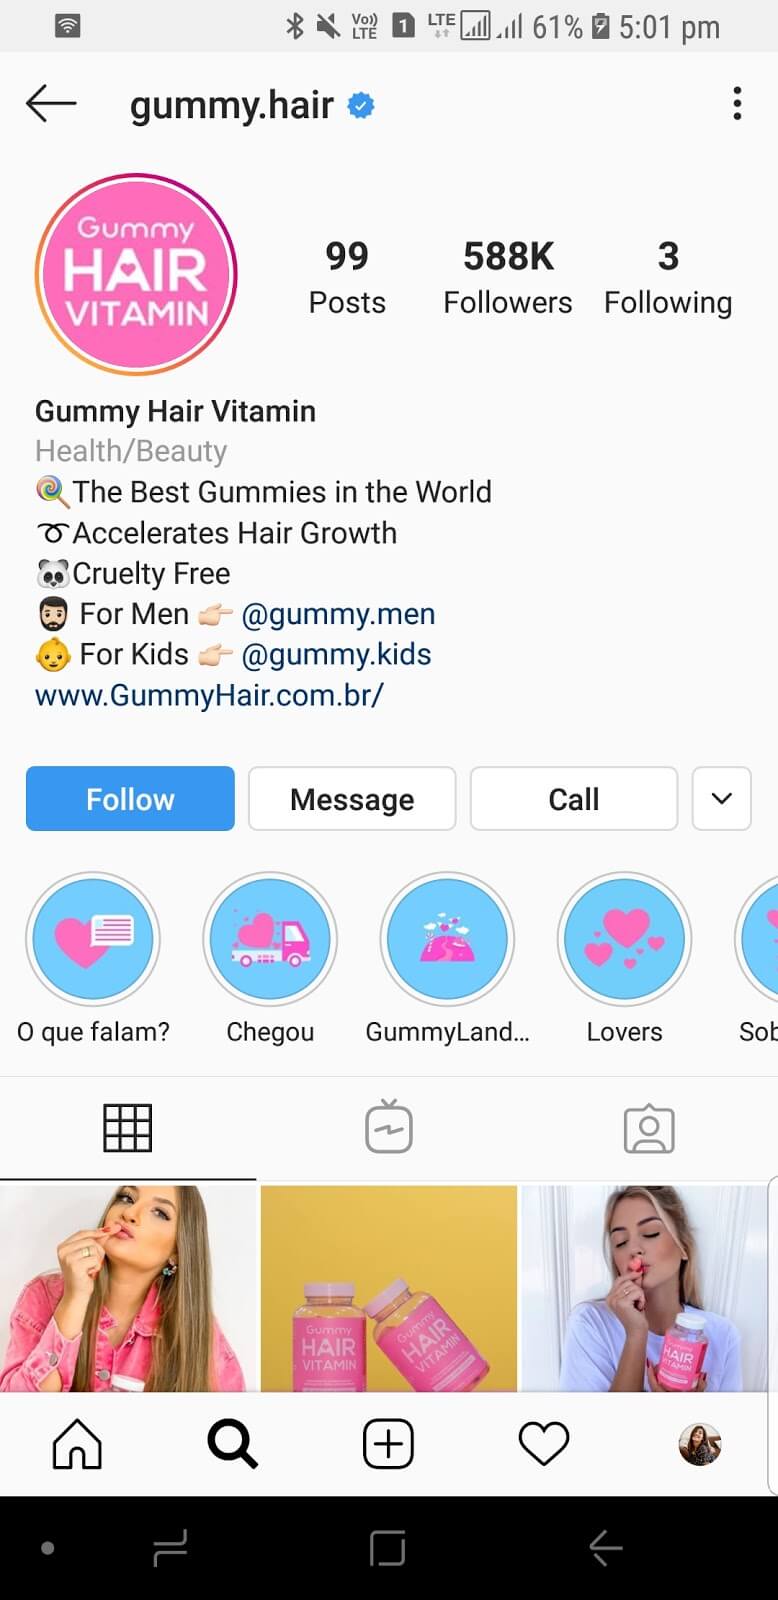 gummy hair instagram highlight covers